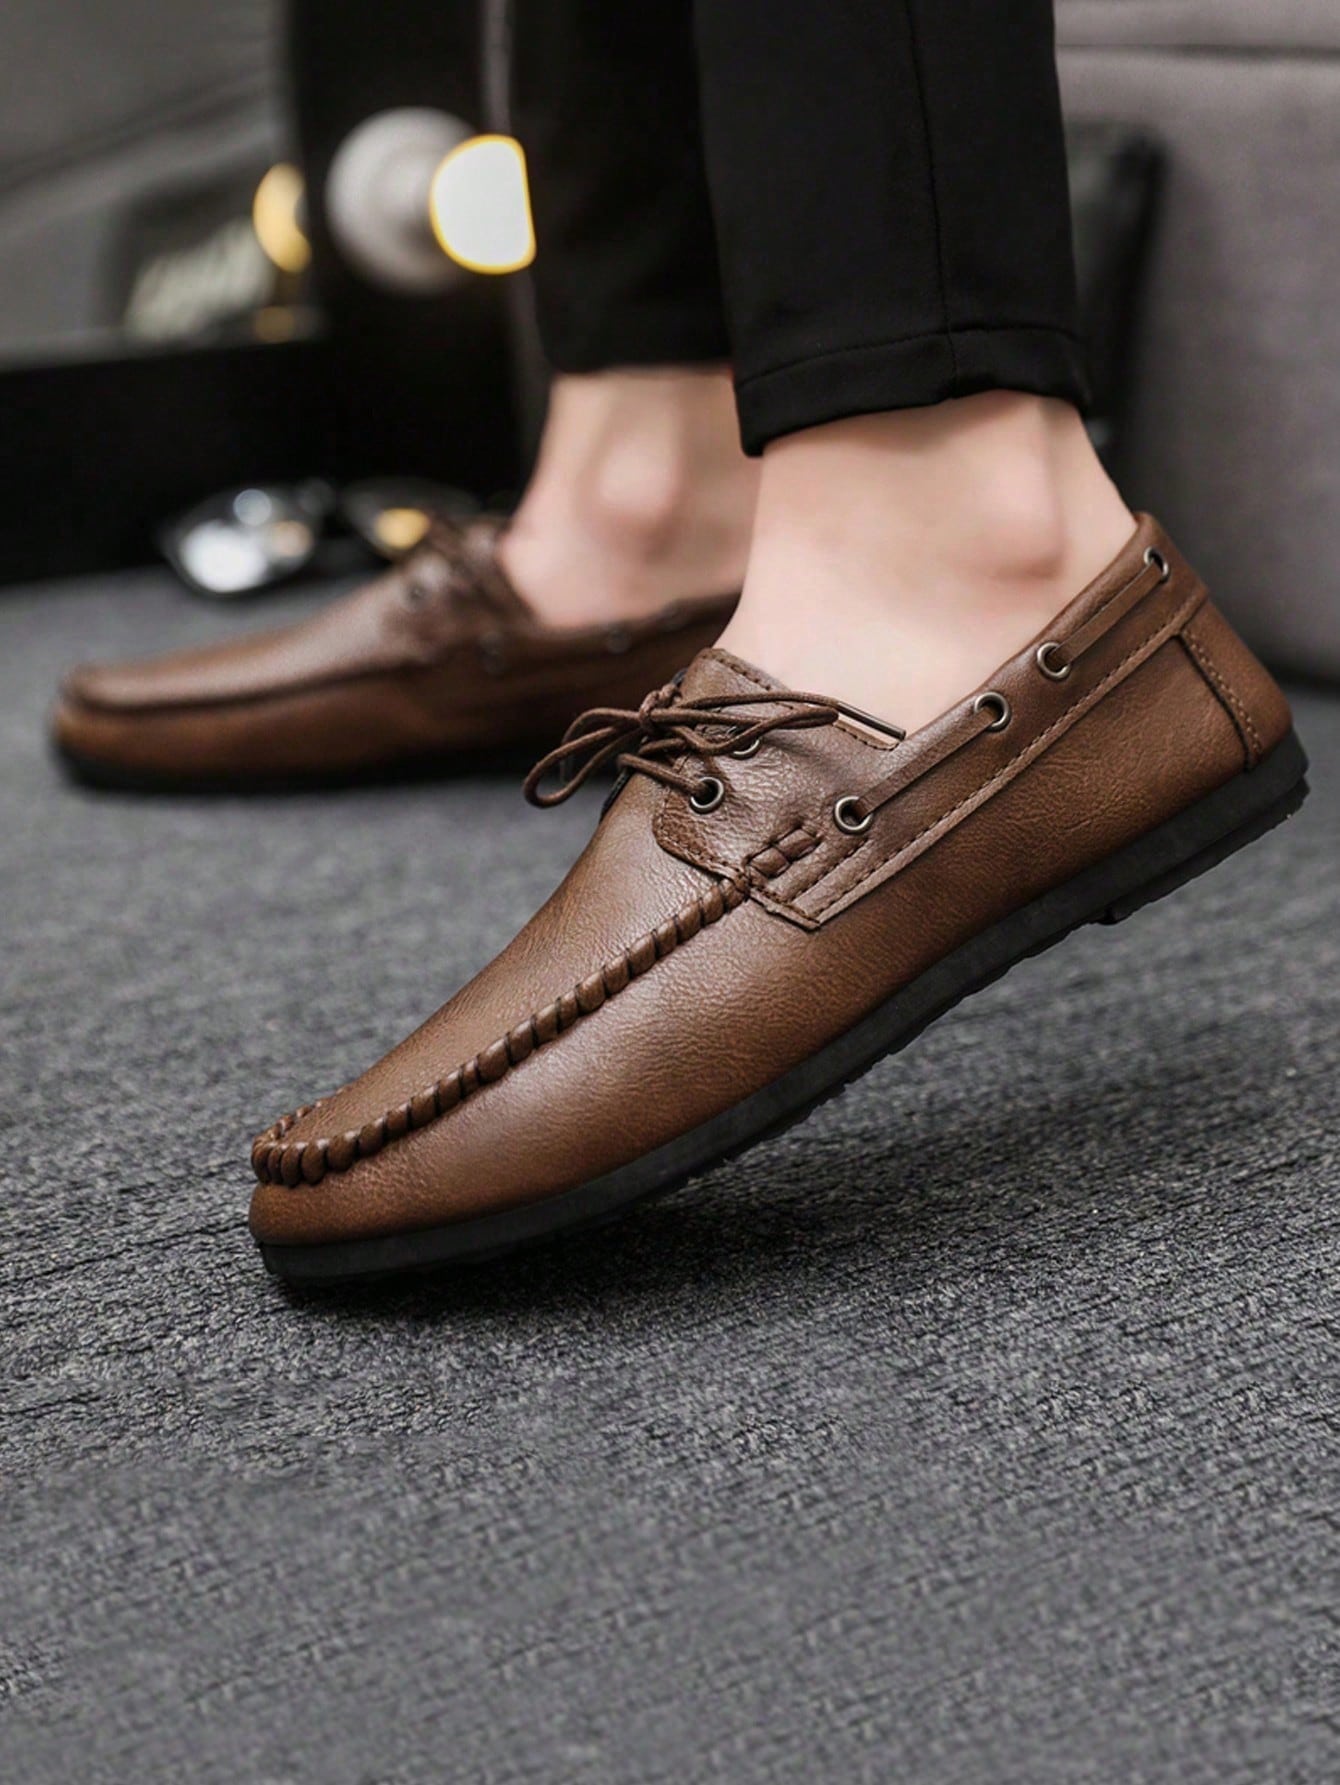 Официальные повседневные кожаные туфли в британском стиле на шнуровке для мужчин, коричневый лоферы мужские кожаные ажурные дышащие оксфорды повседневная обувь без застежки формальные туфли под платье лето